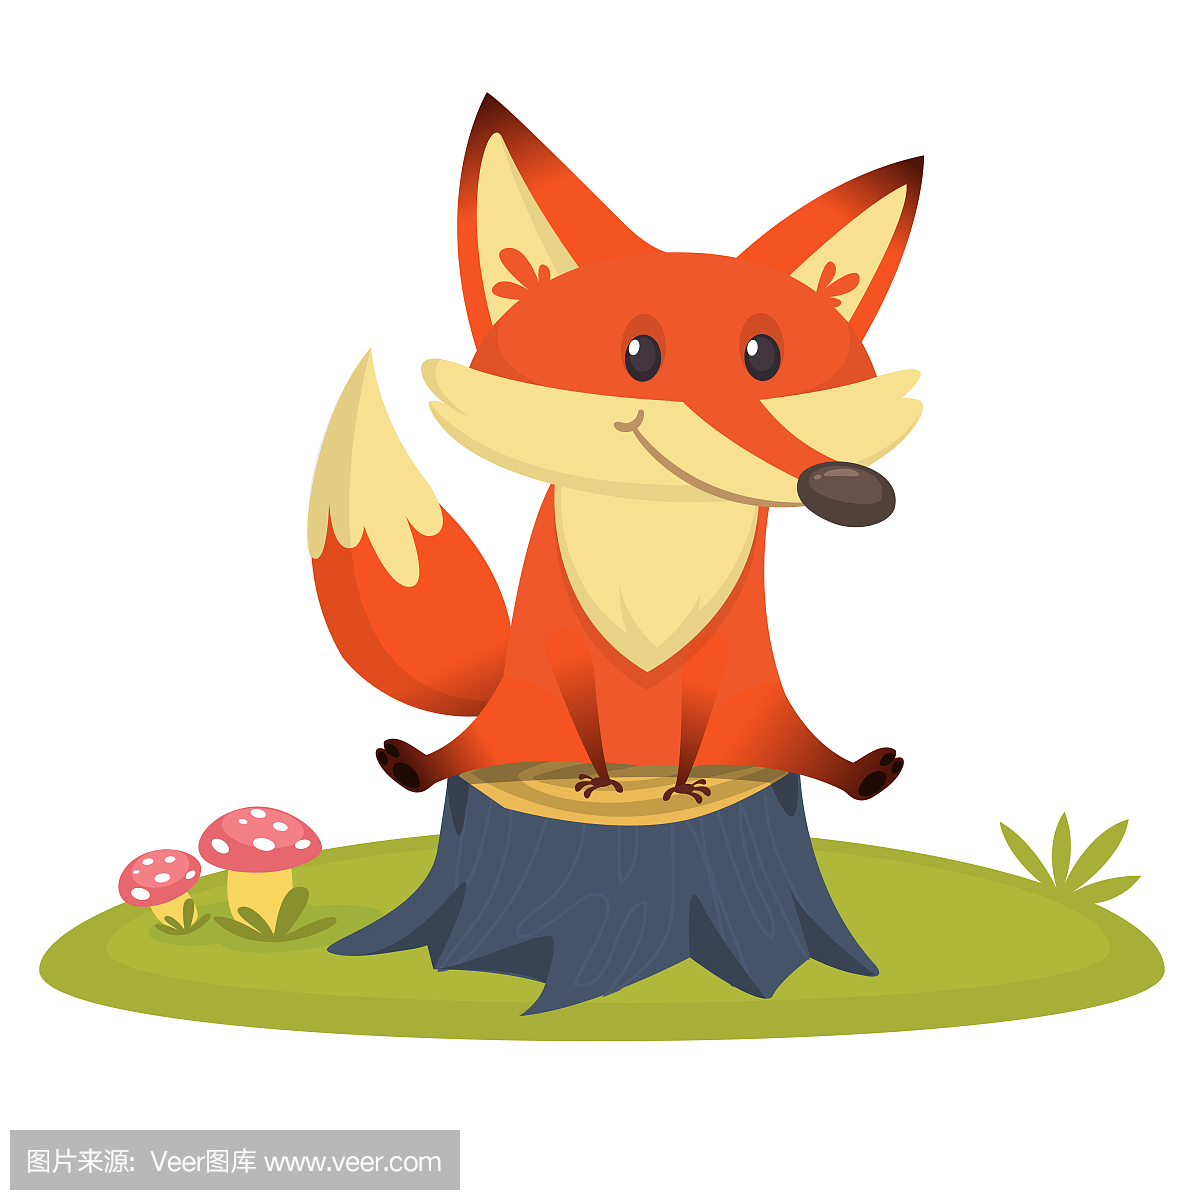 坐在树桩上的卡通快乐狐狸。矢量图